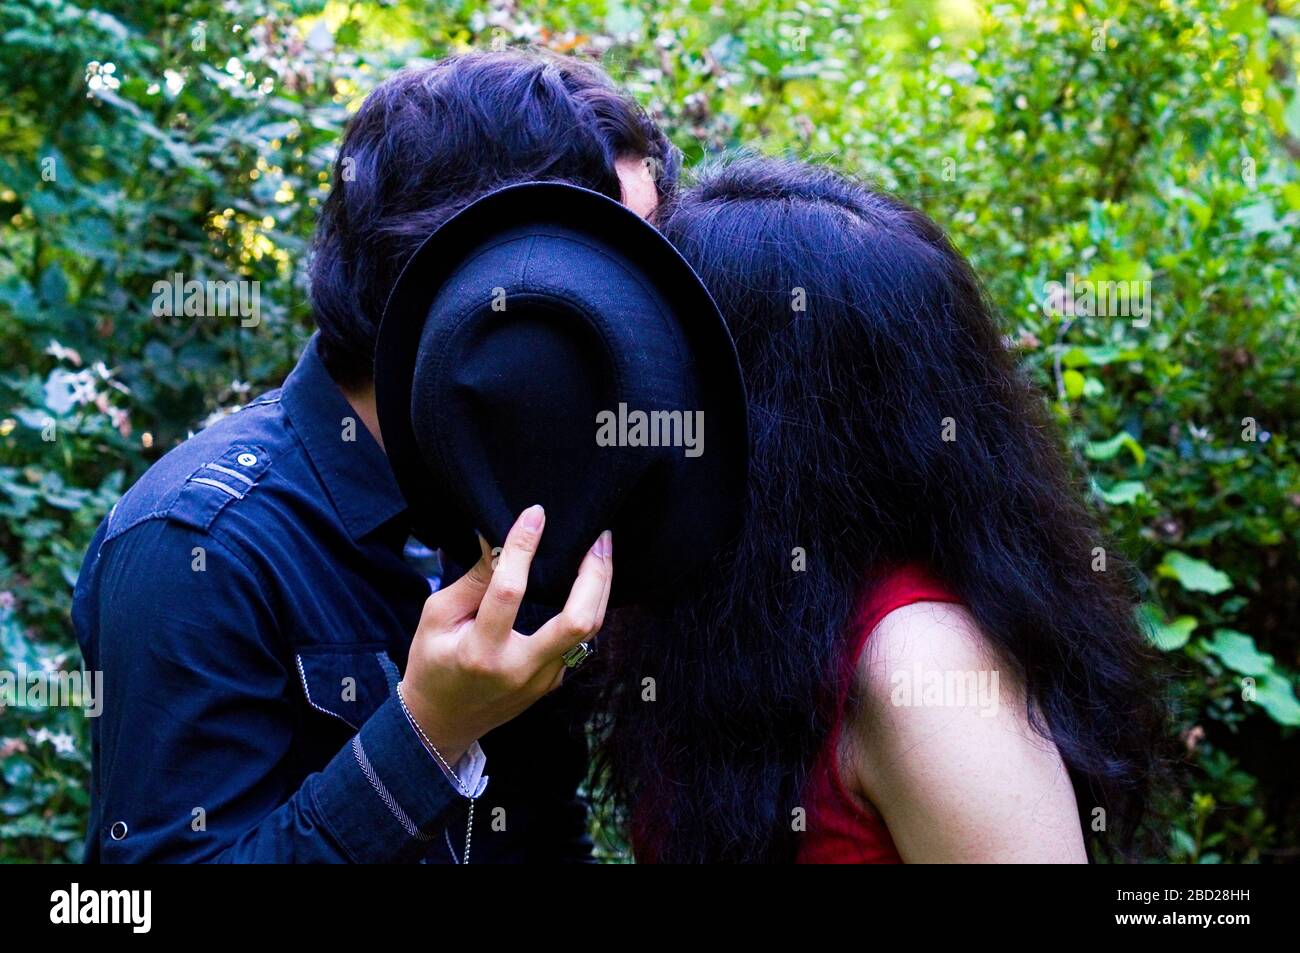 Freund und Freundin küssen, während sie ihre Gesichter mit einem Hut verstecken Stockfoto